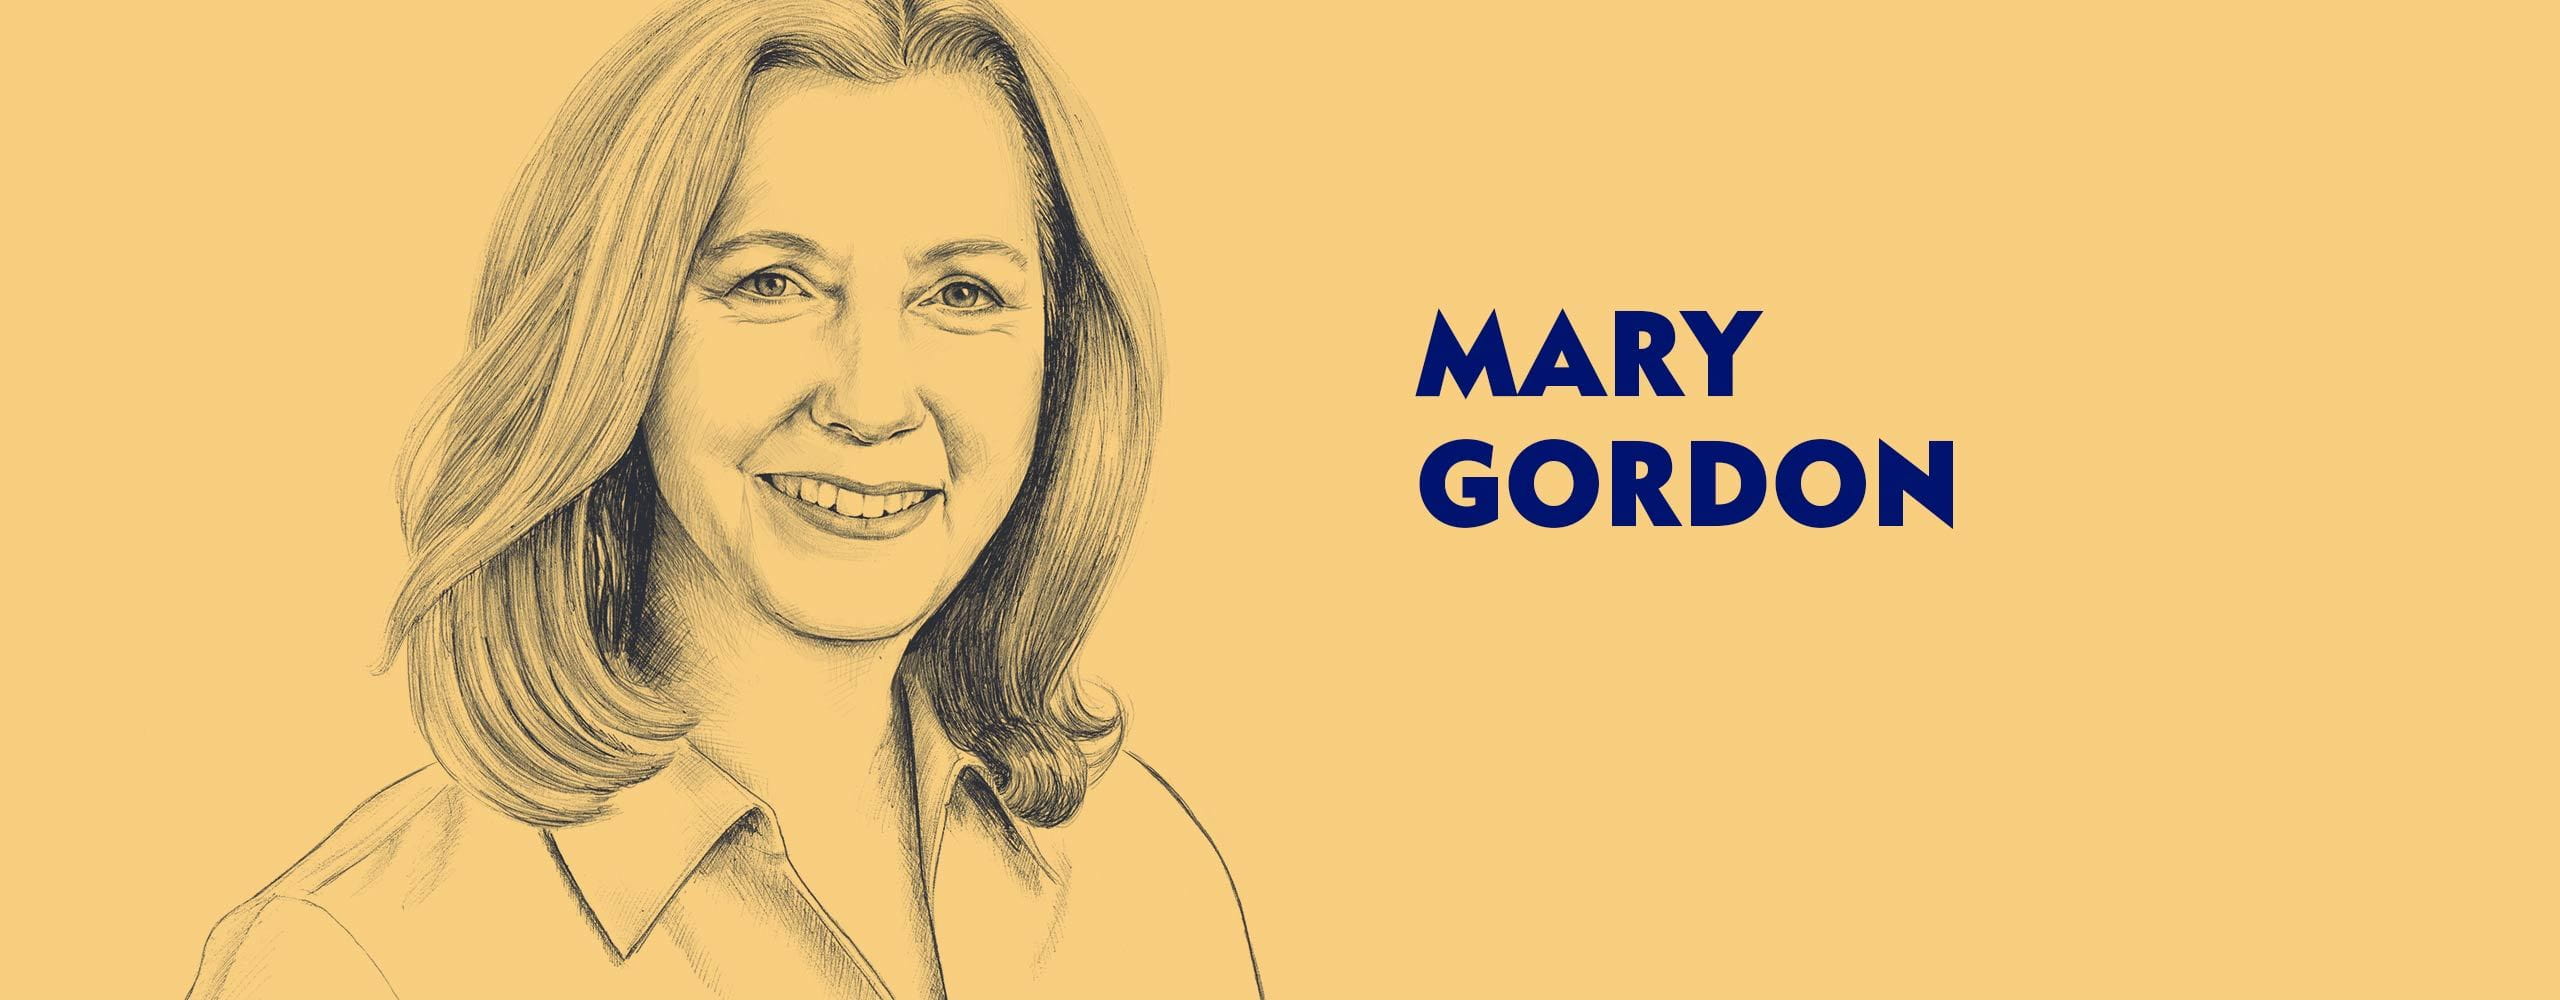 Intervju med Mary Gordon